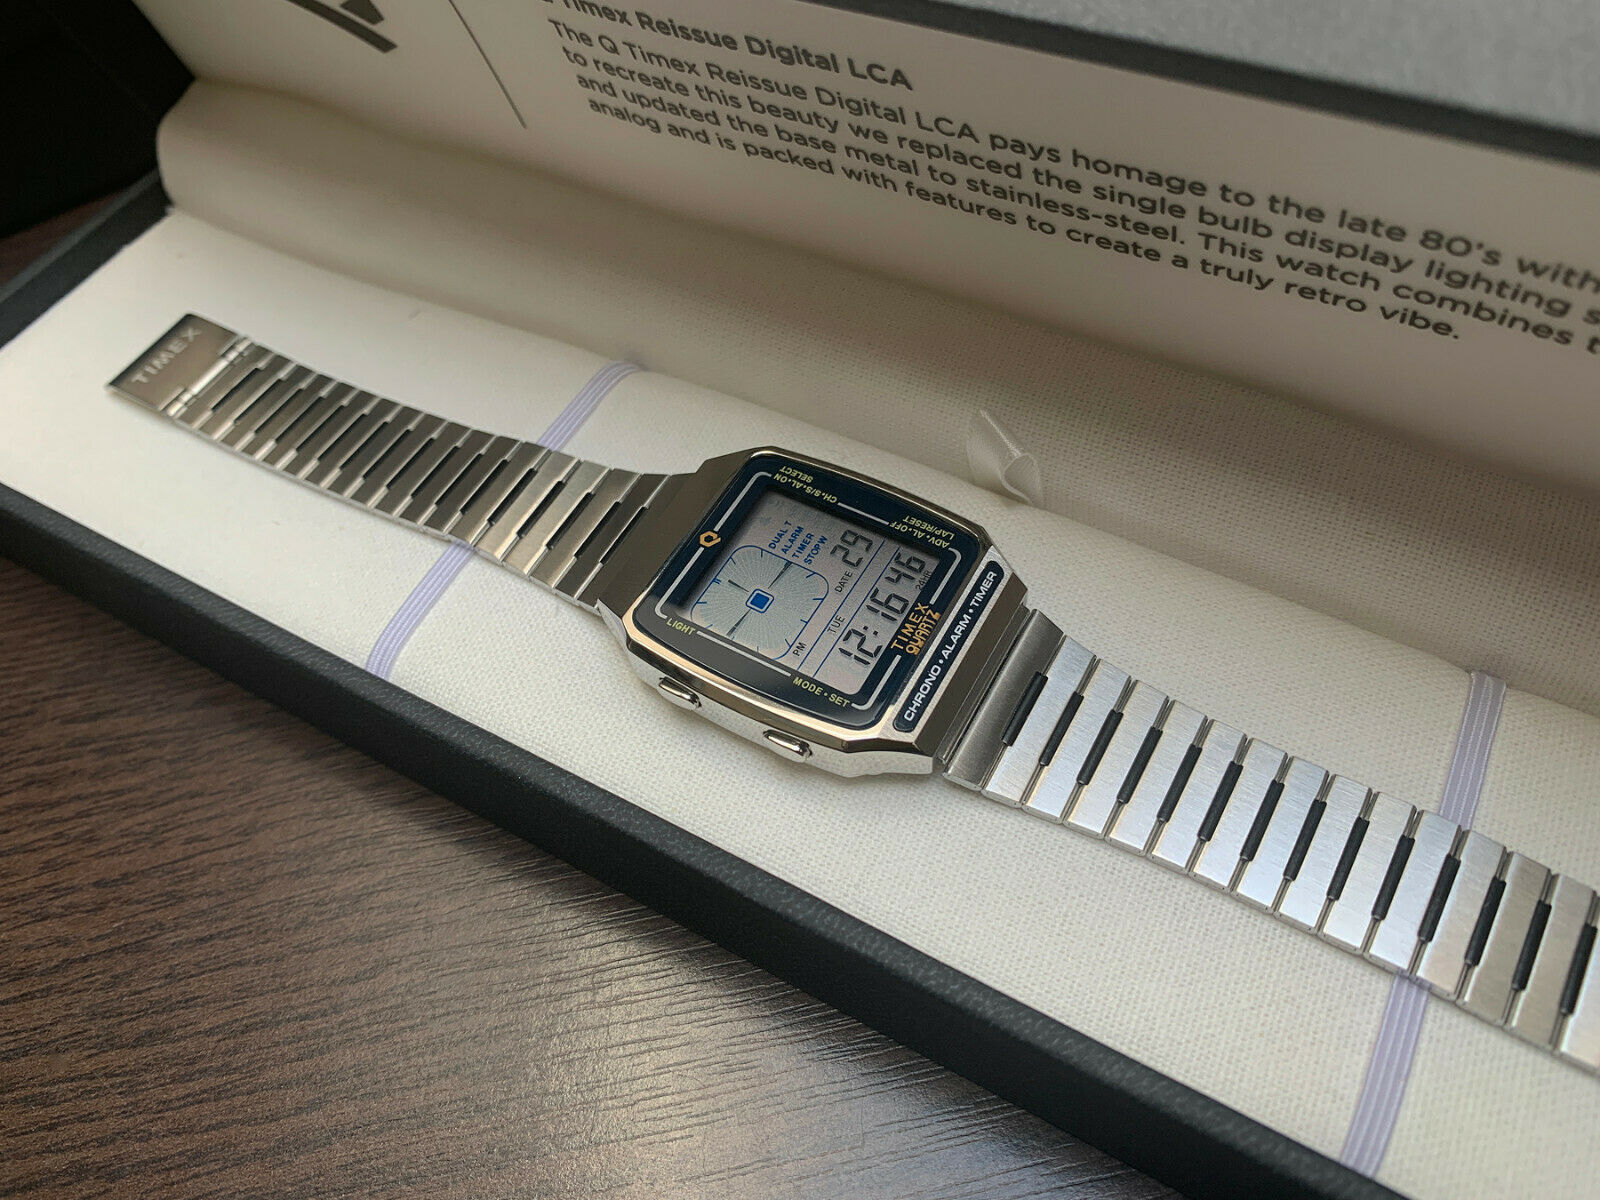 Timex Q Reissue Digital LCA Stainless Steel Watch | WatchCharts